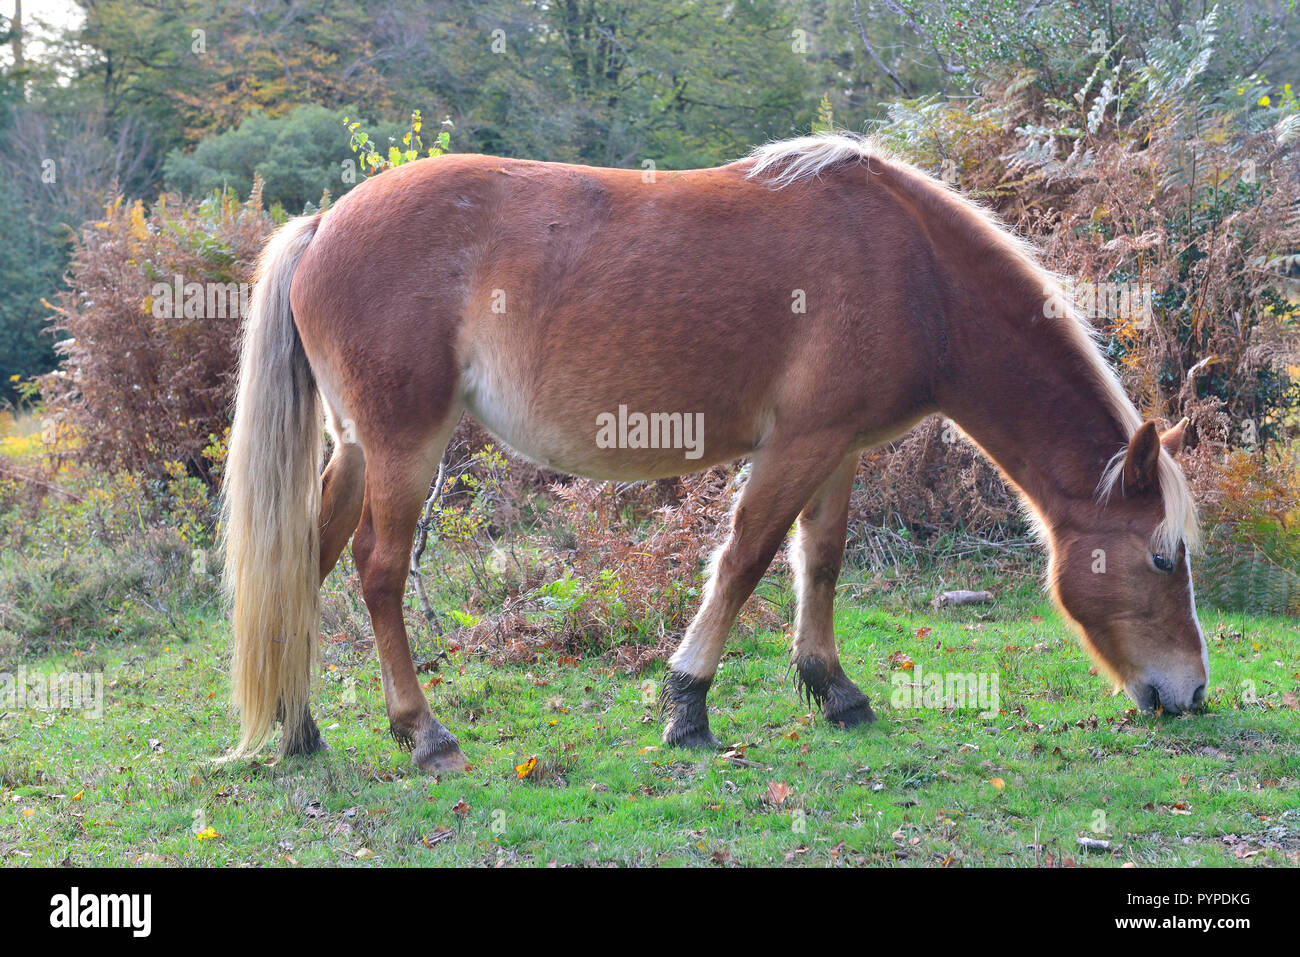 El New Forest pony es uno de los reconocidos y páramos de montaña o razas de ponis nativa de las Islas Británicas. Foto de stock